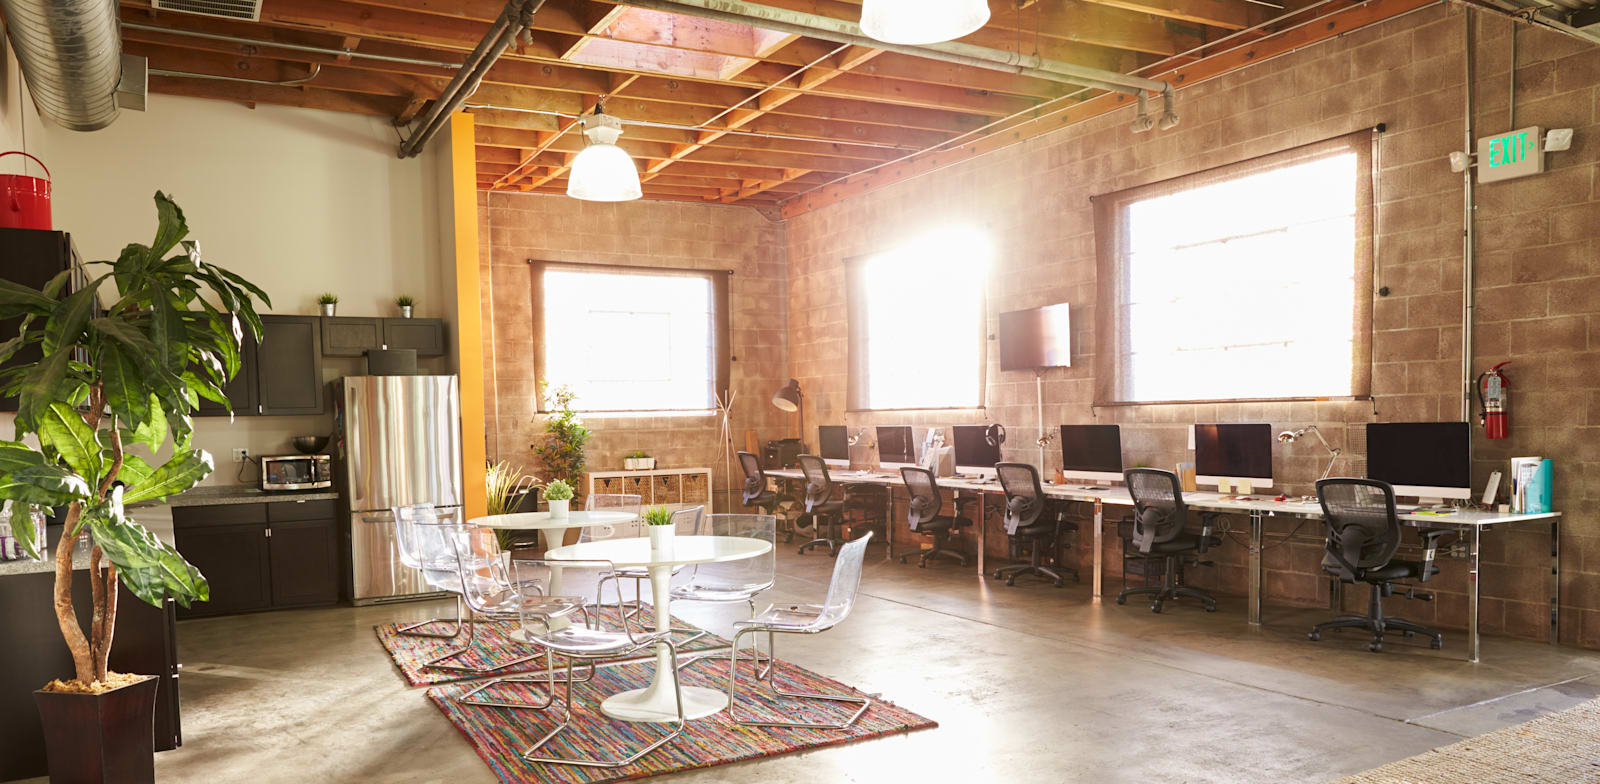 משרד בסן פרנסיסקו. הוויתור על הימים מאפשר שכירת שטח גדול יותר / צילום: Shutterstock